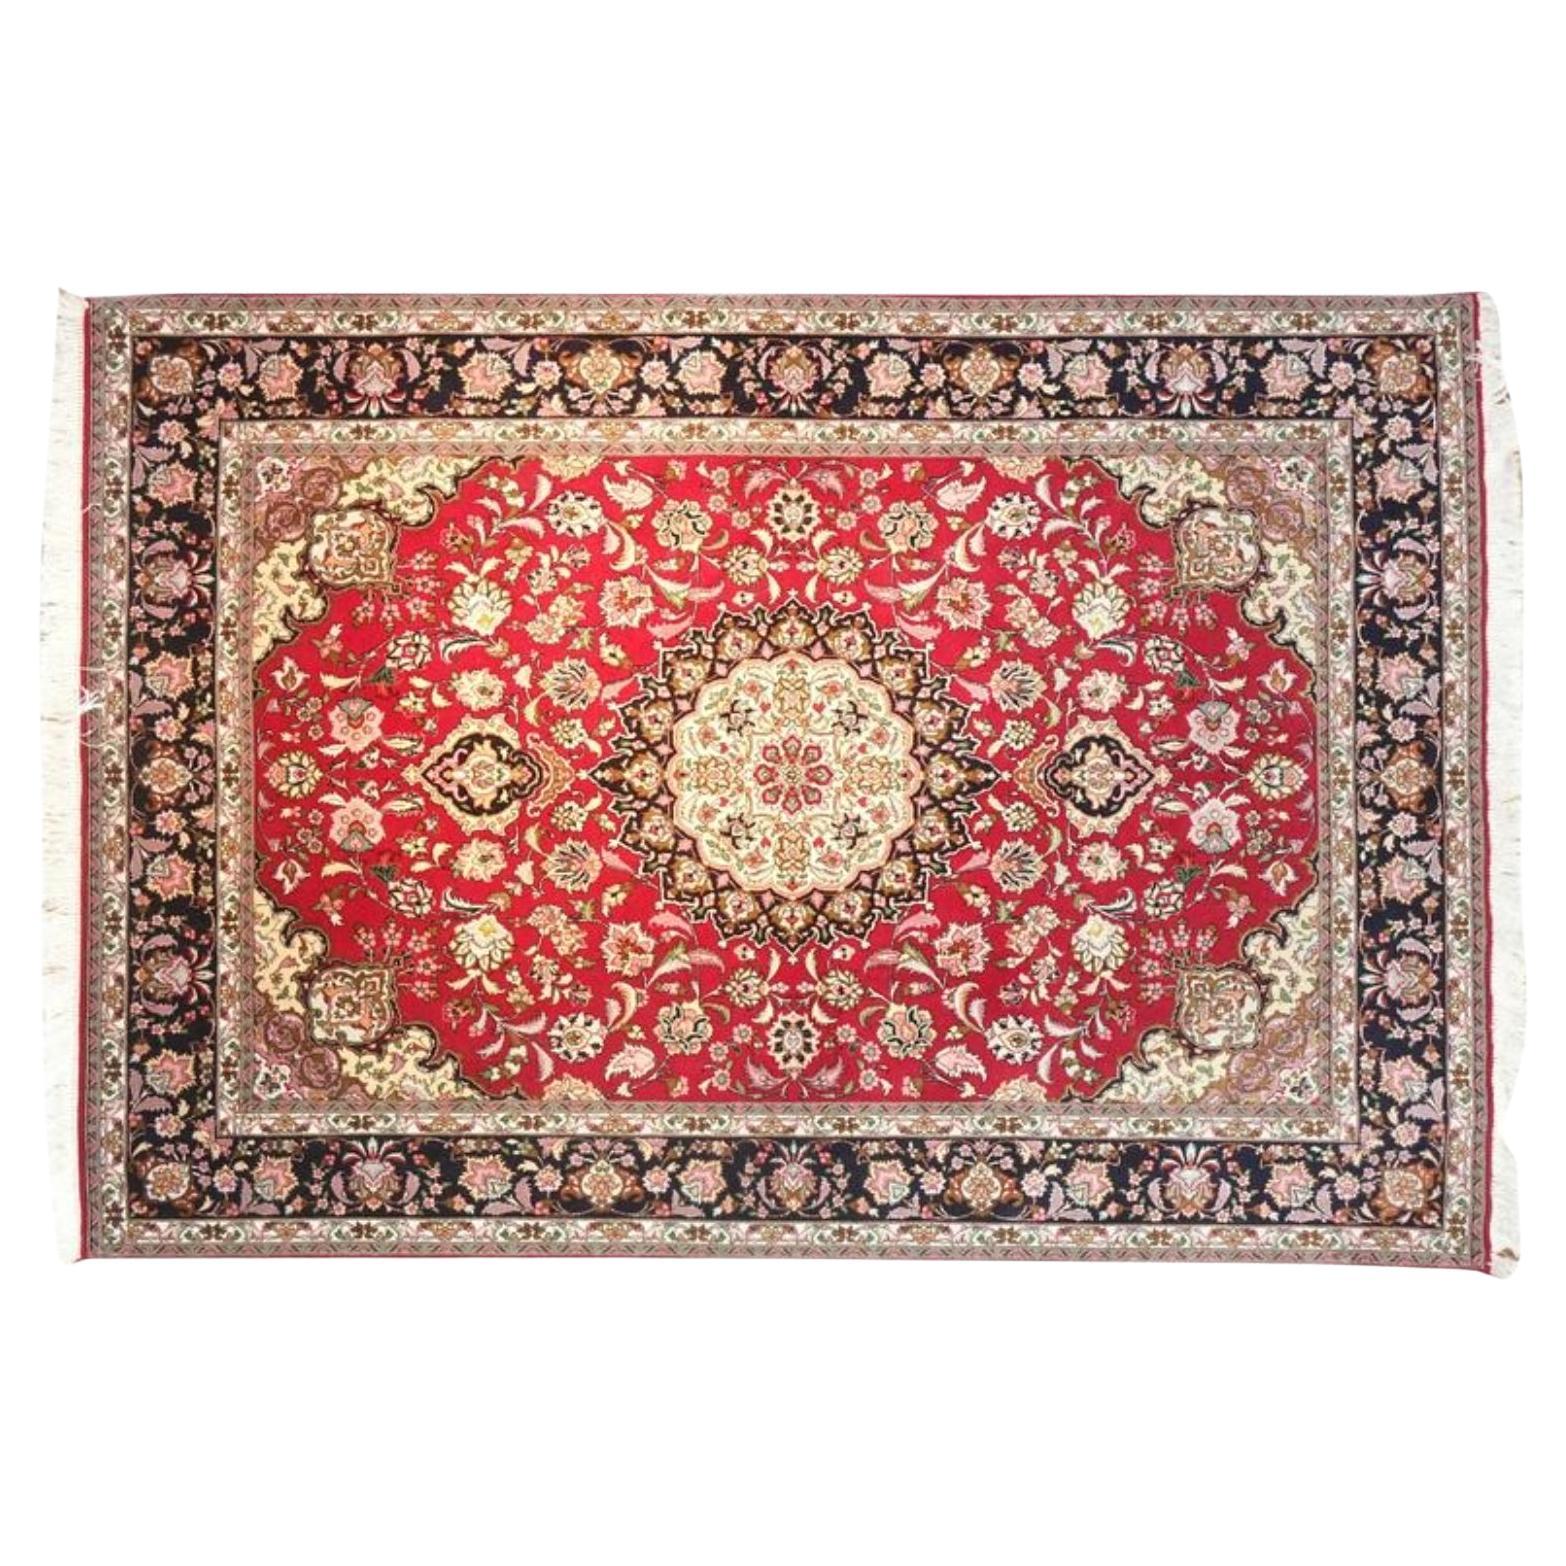 Very fine Persian Tabriz Silk & Wool - 5' 6.1' For Sale